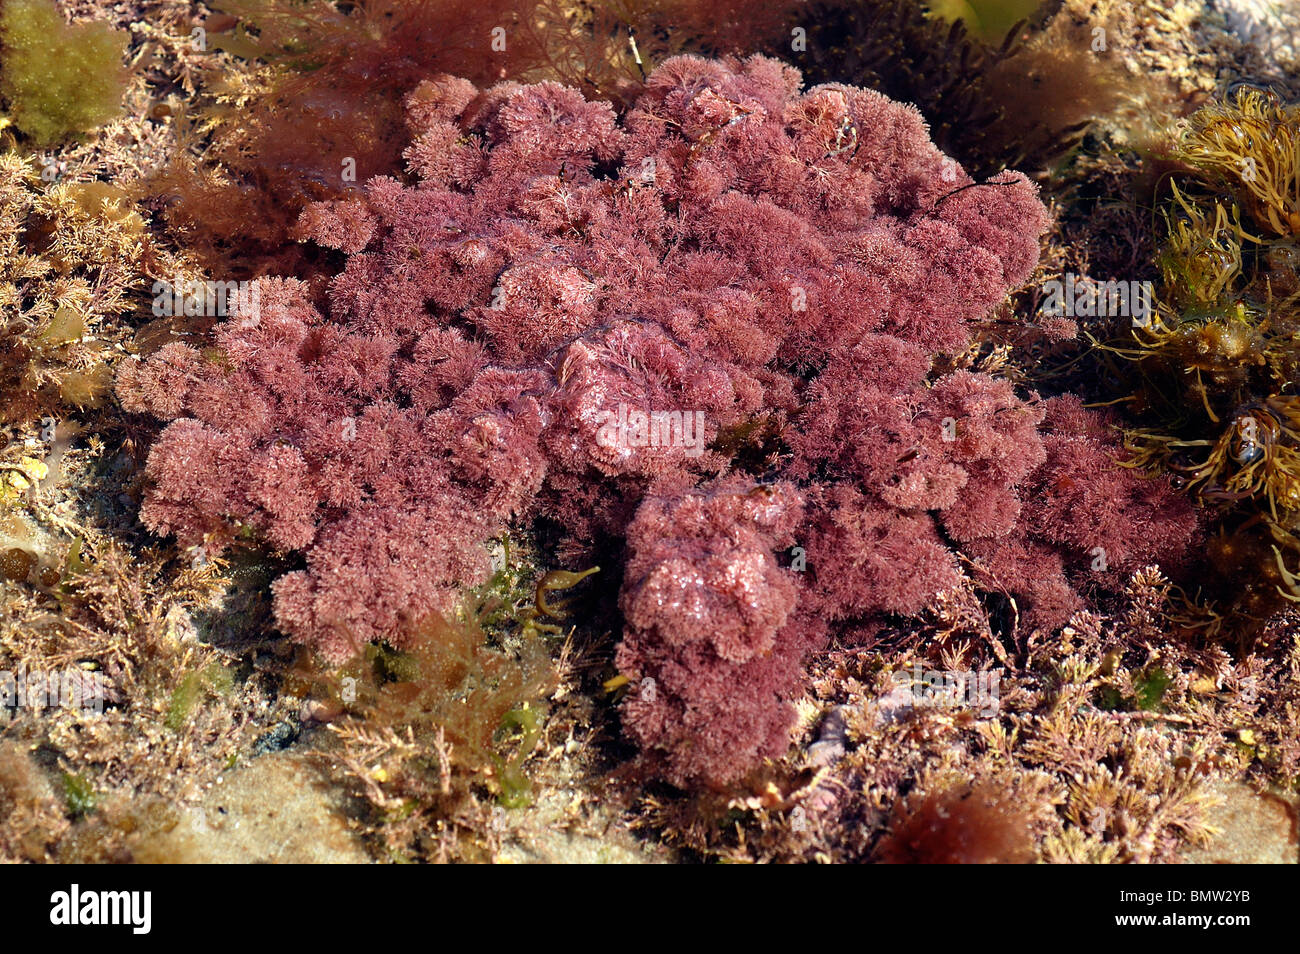 Red seaweed (Jania rubens) in a rockpool, UK Stock Photo